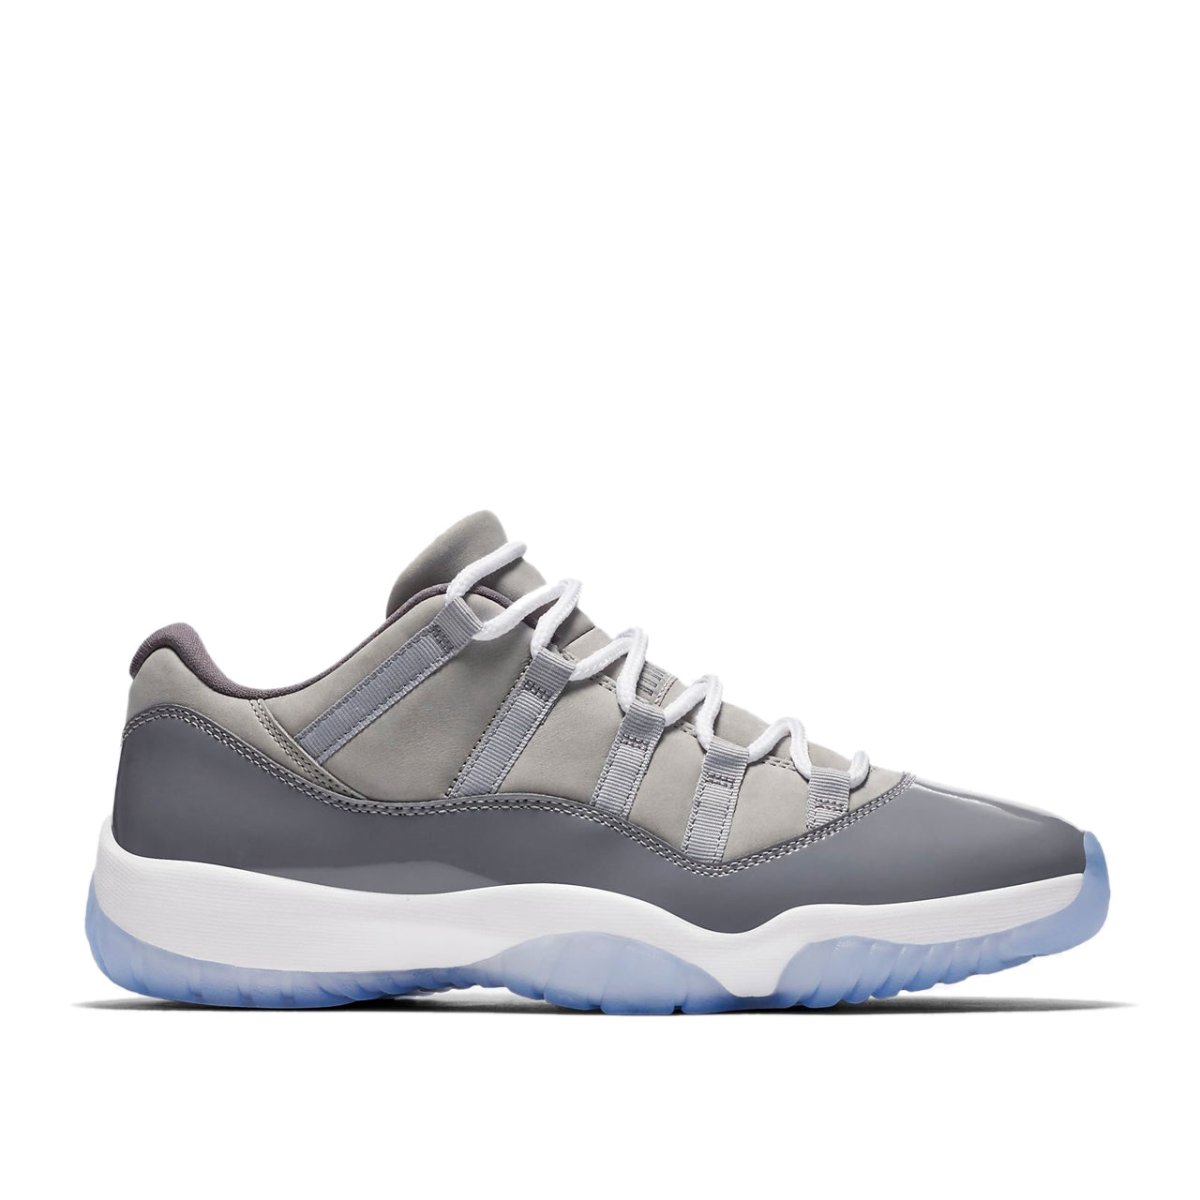 Nike Air Jordan XI Retro Low 'Cool Grey' (Grau)  - Allike Store